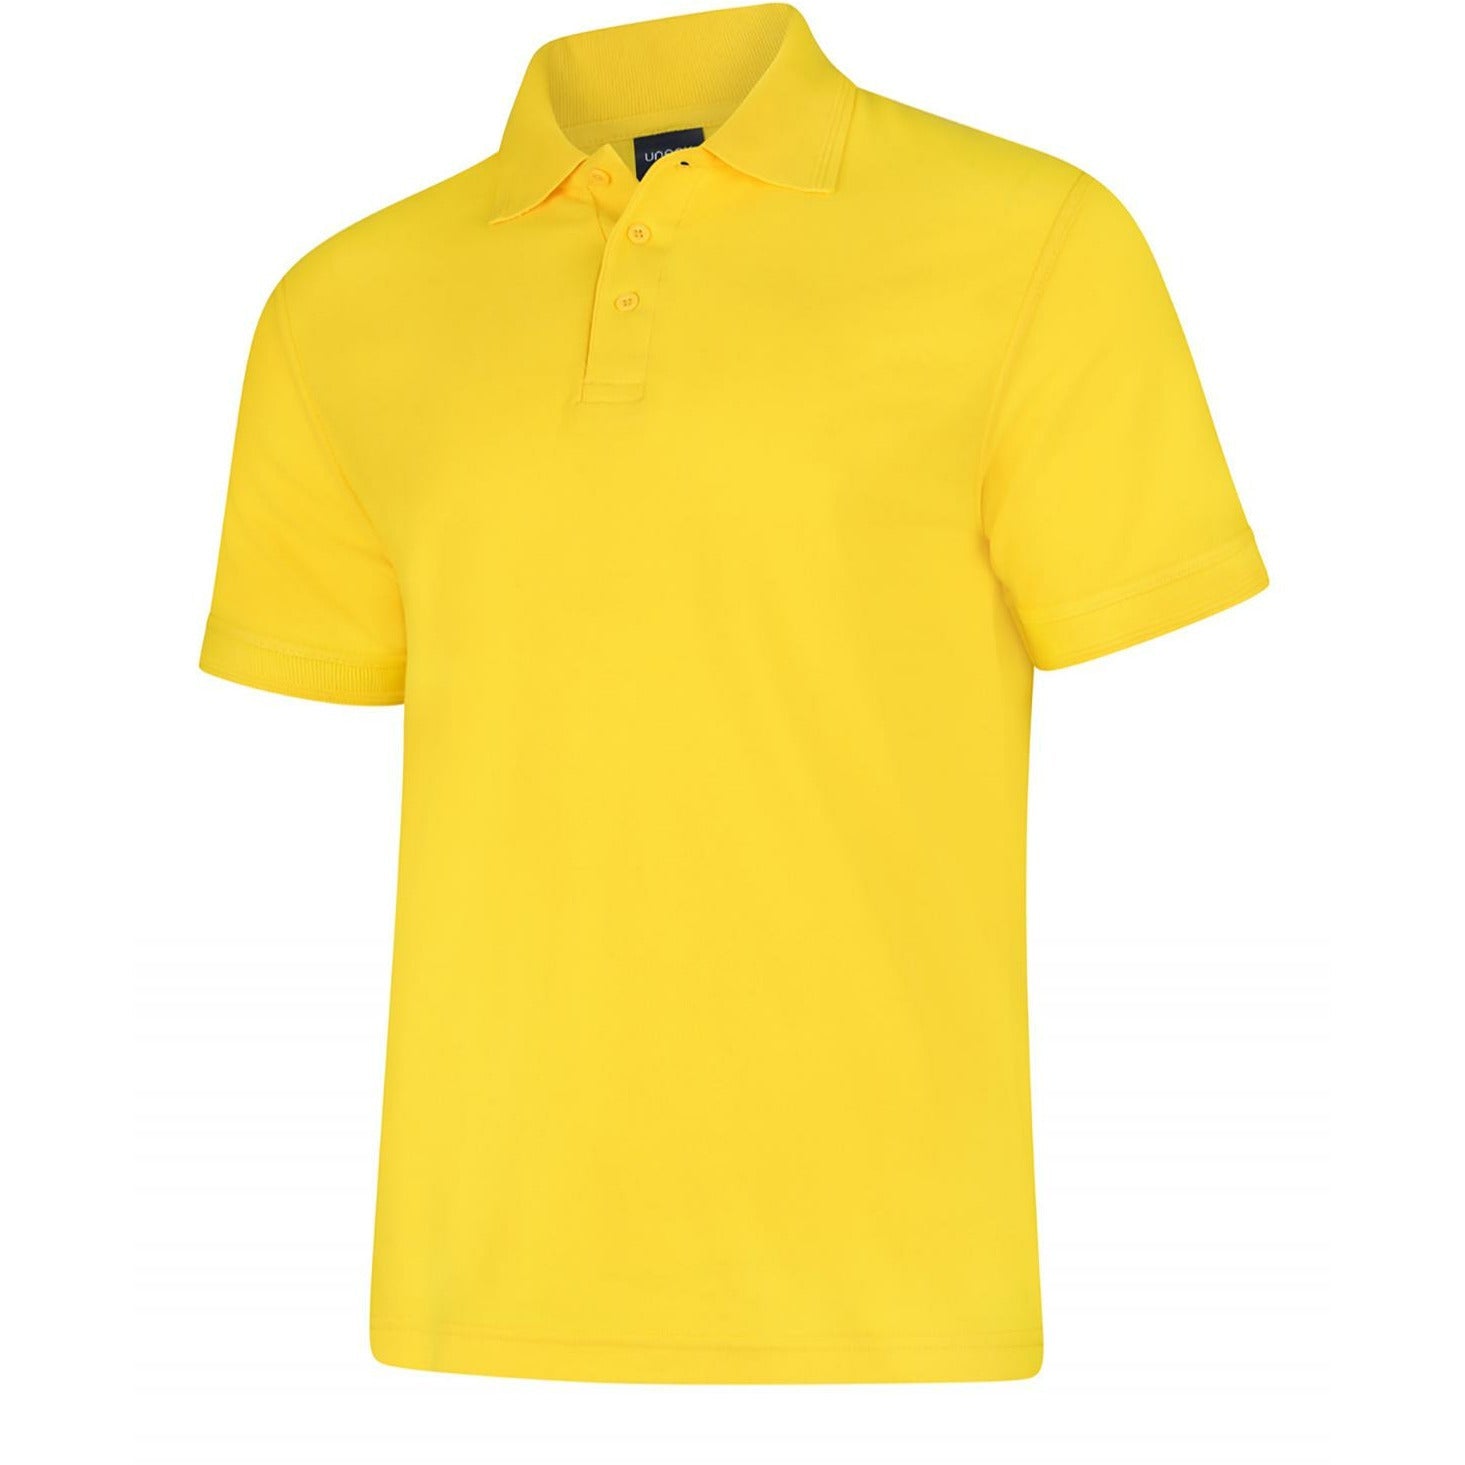 Deluxe Polo Shirt (2XL - 4XL) - Yellow